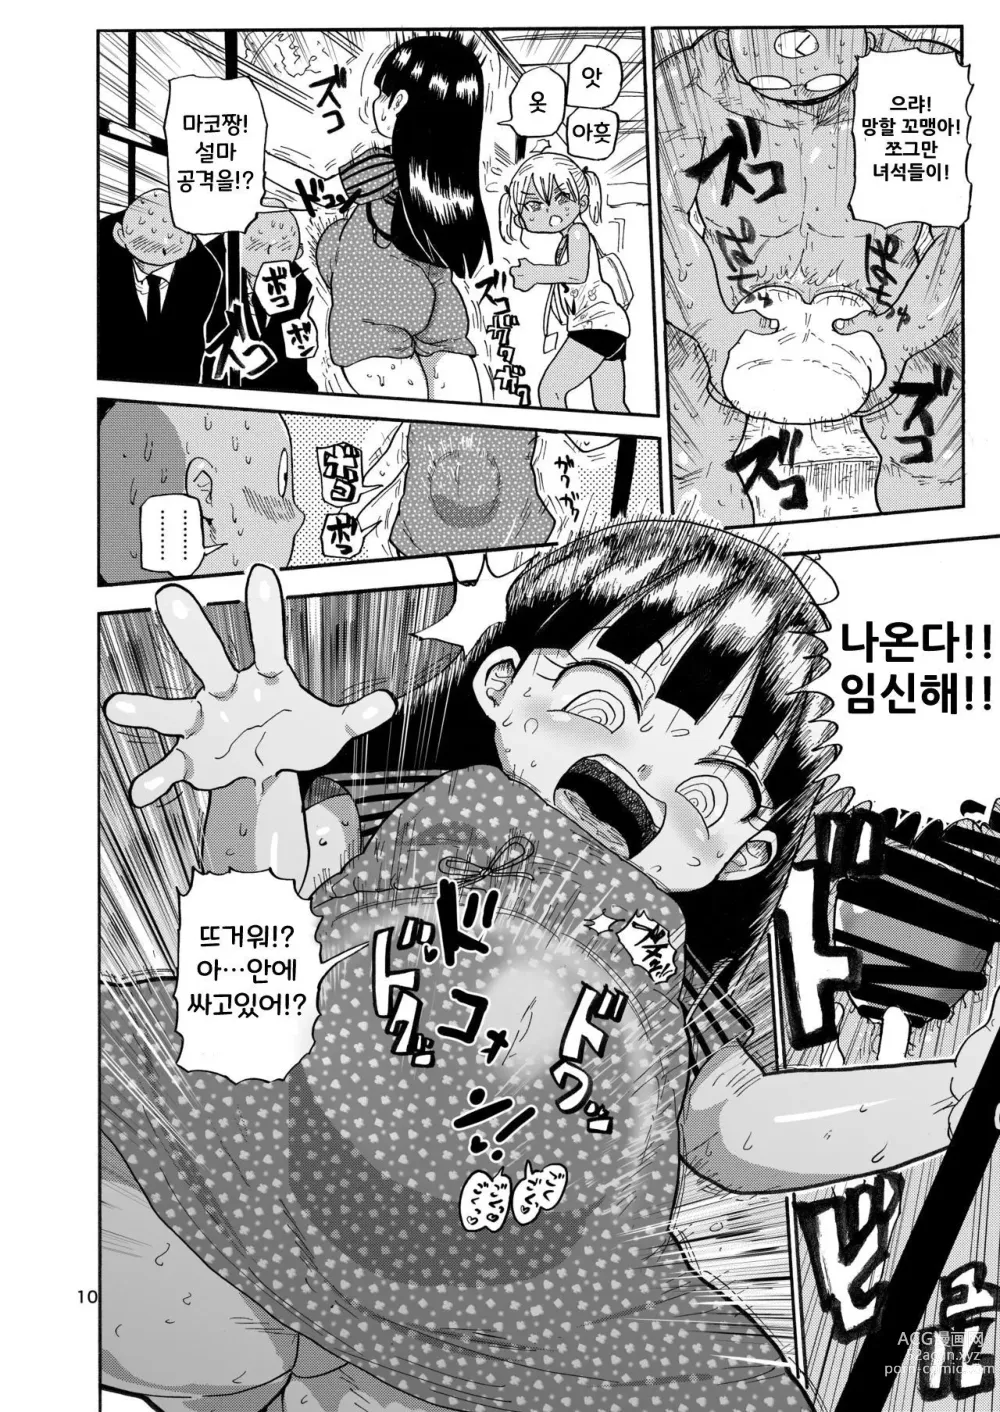 Page 9 of doujinshi Yousei no Mahou Shoujo 2